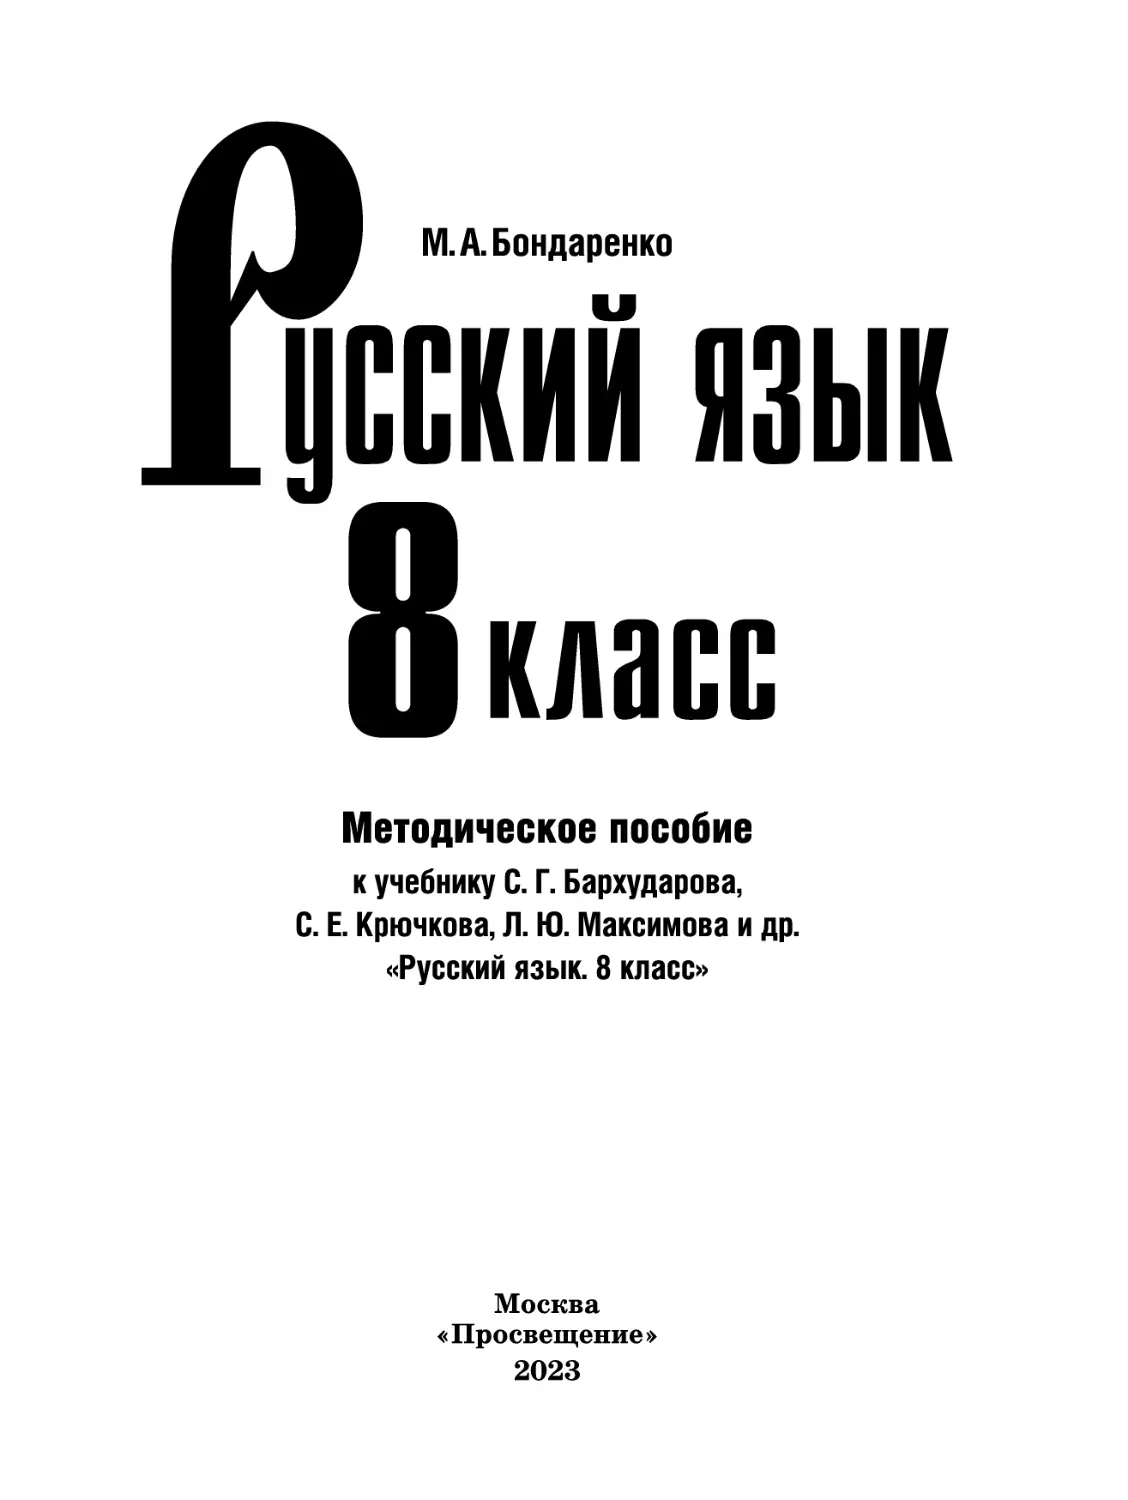 Русский язык. 8 кл. класс (М.А. Бондаренко)